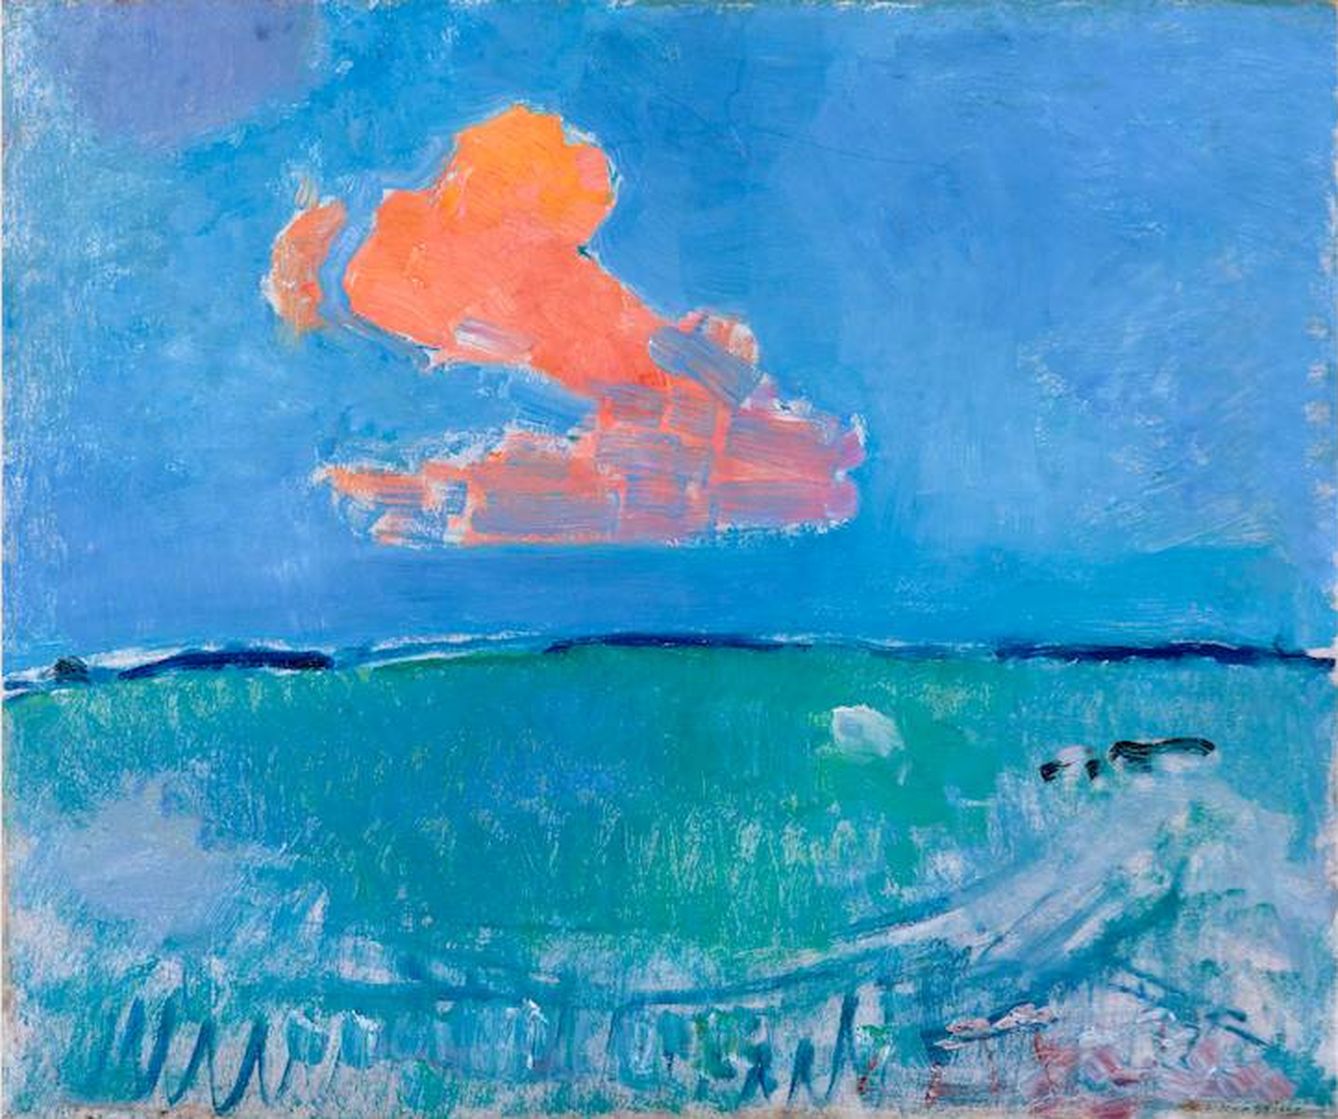 'The red Cloud', Mondrian (1907) (Gemeentemuseum Den Haag)